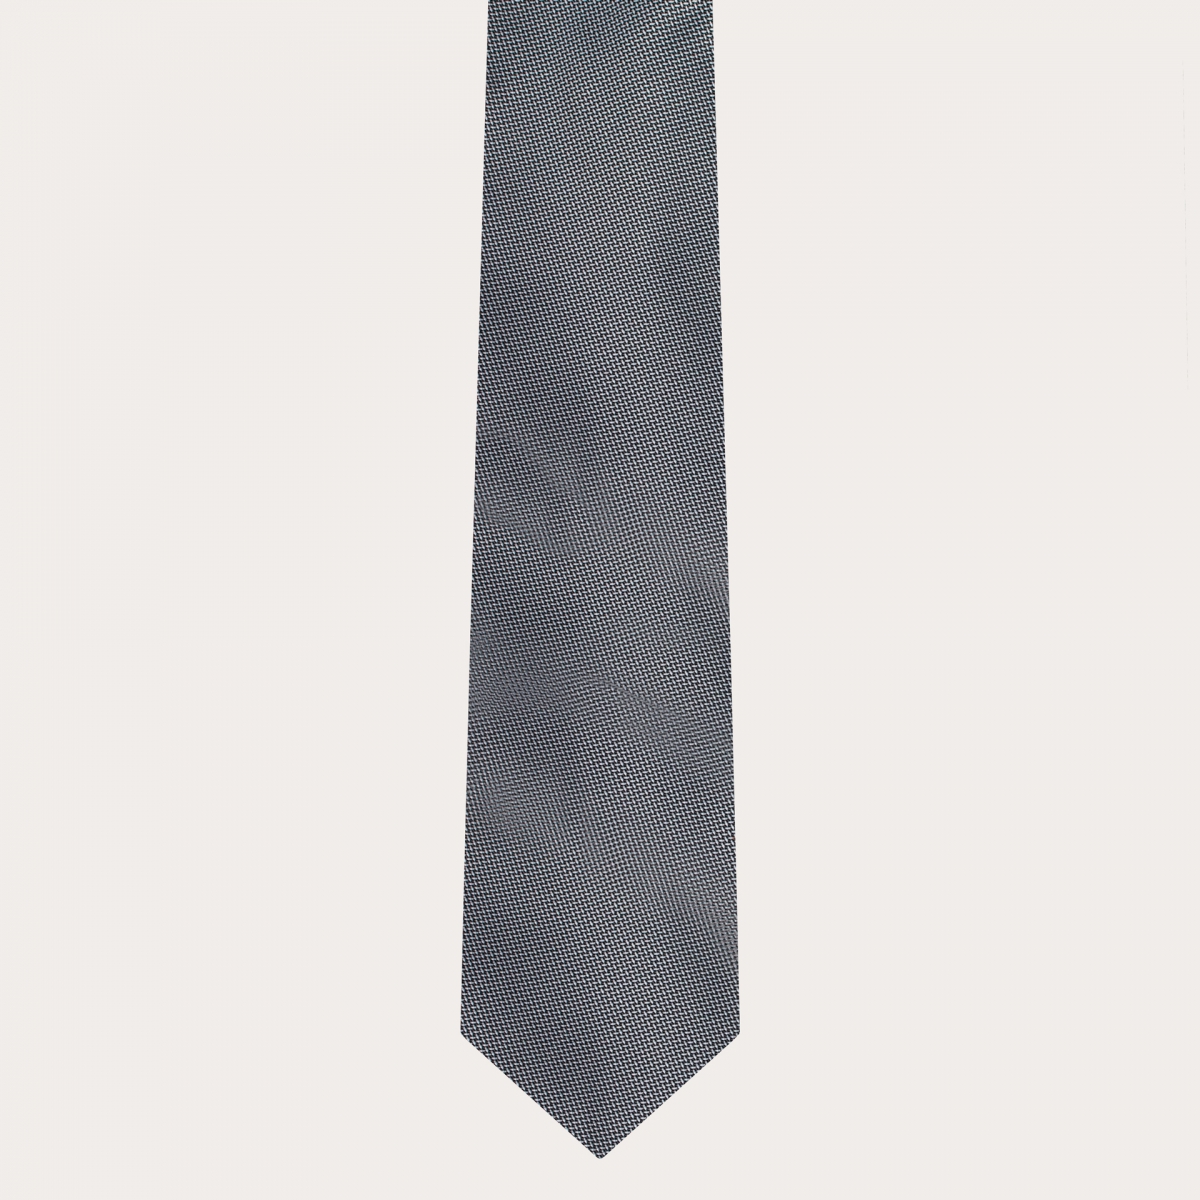 BRUCLE Ensemble complet de bretelles, cravate et pochette, soie grise à pois